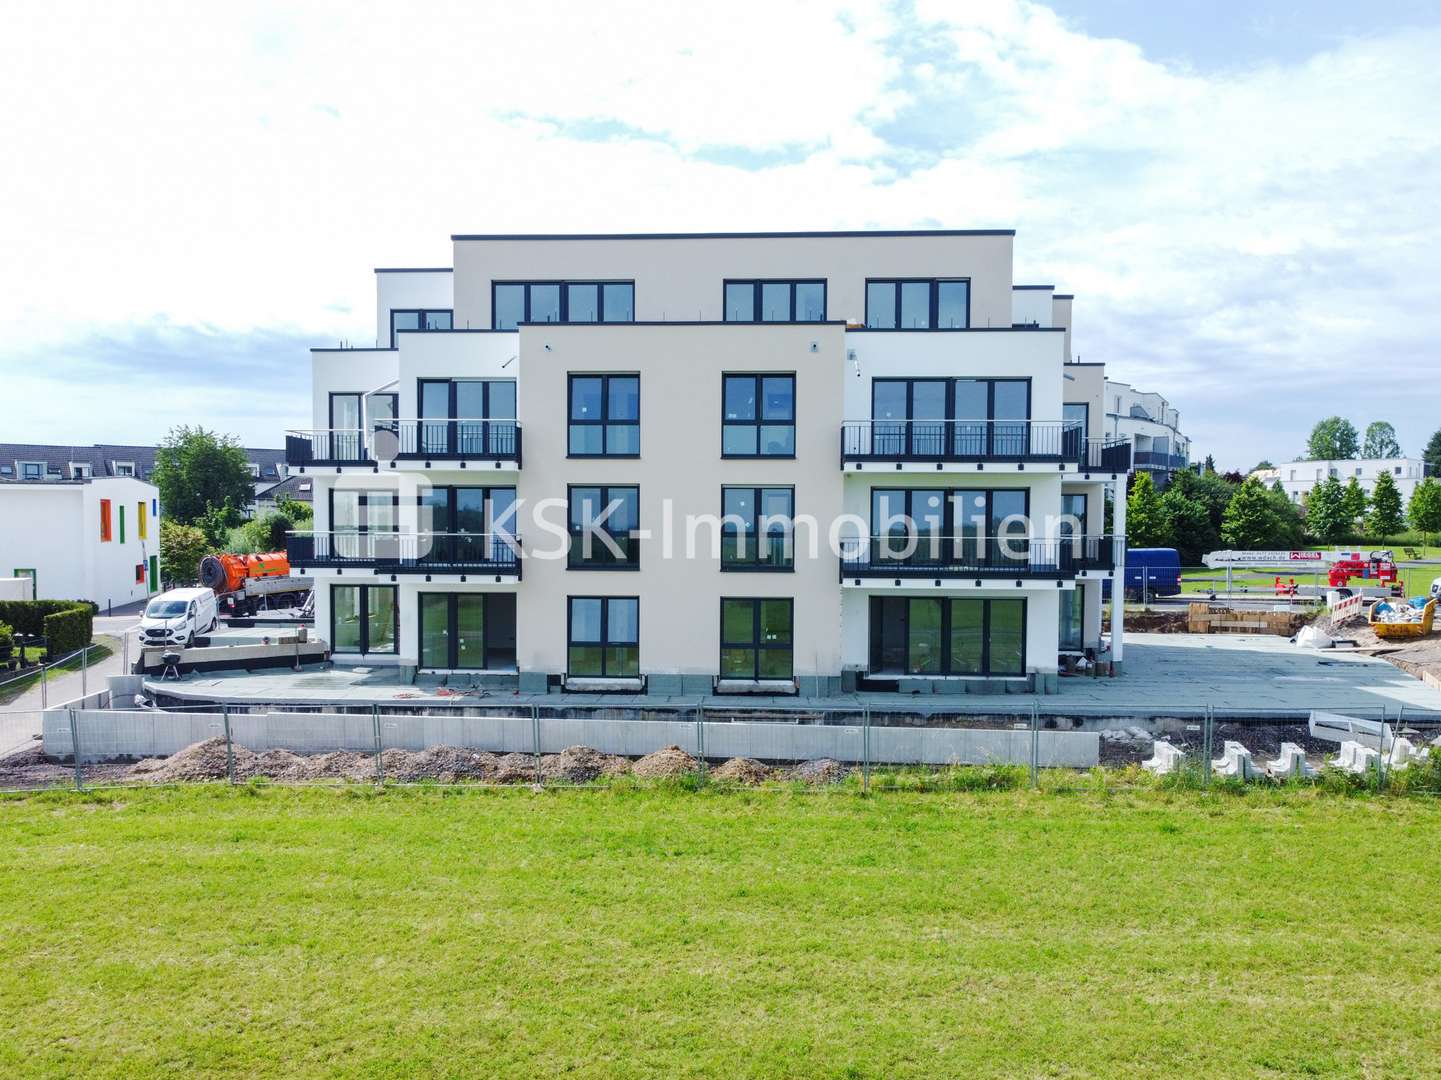 null - Dachgeschosswohnung in 53125 Bonn mit 108m² kaufen